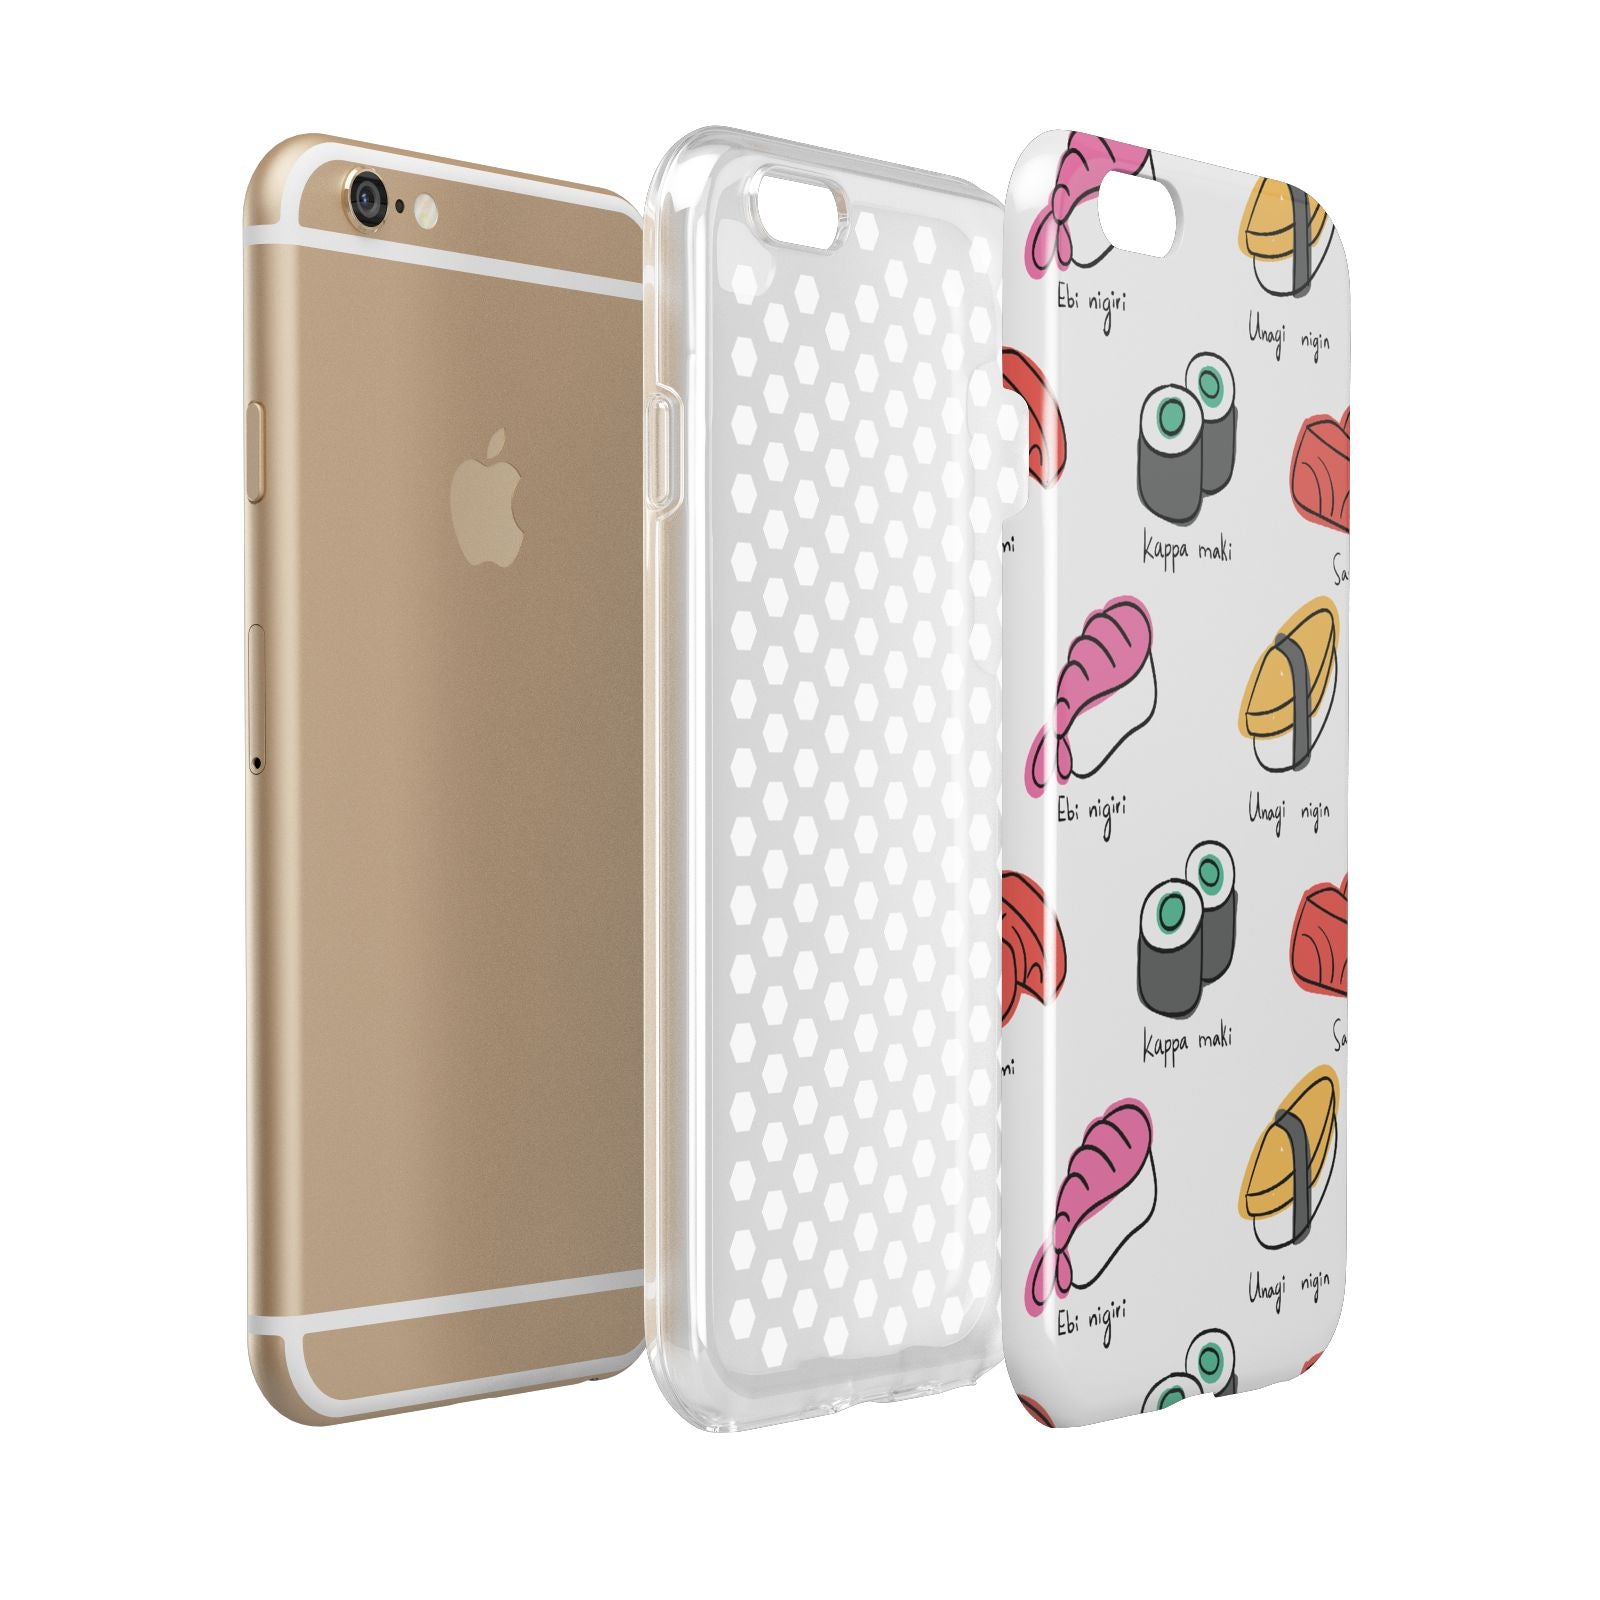 Sashimi Kappa Maki Sushi Apple iPhone 6 3D Tough Case Expanded view